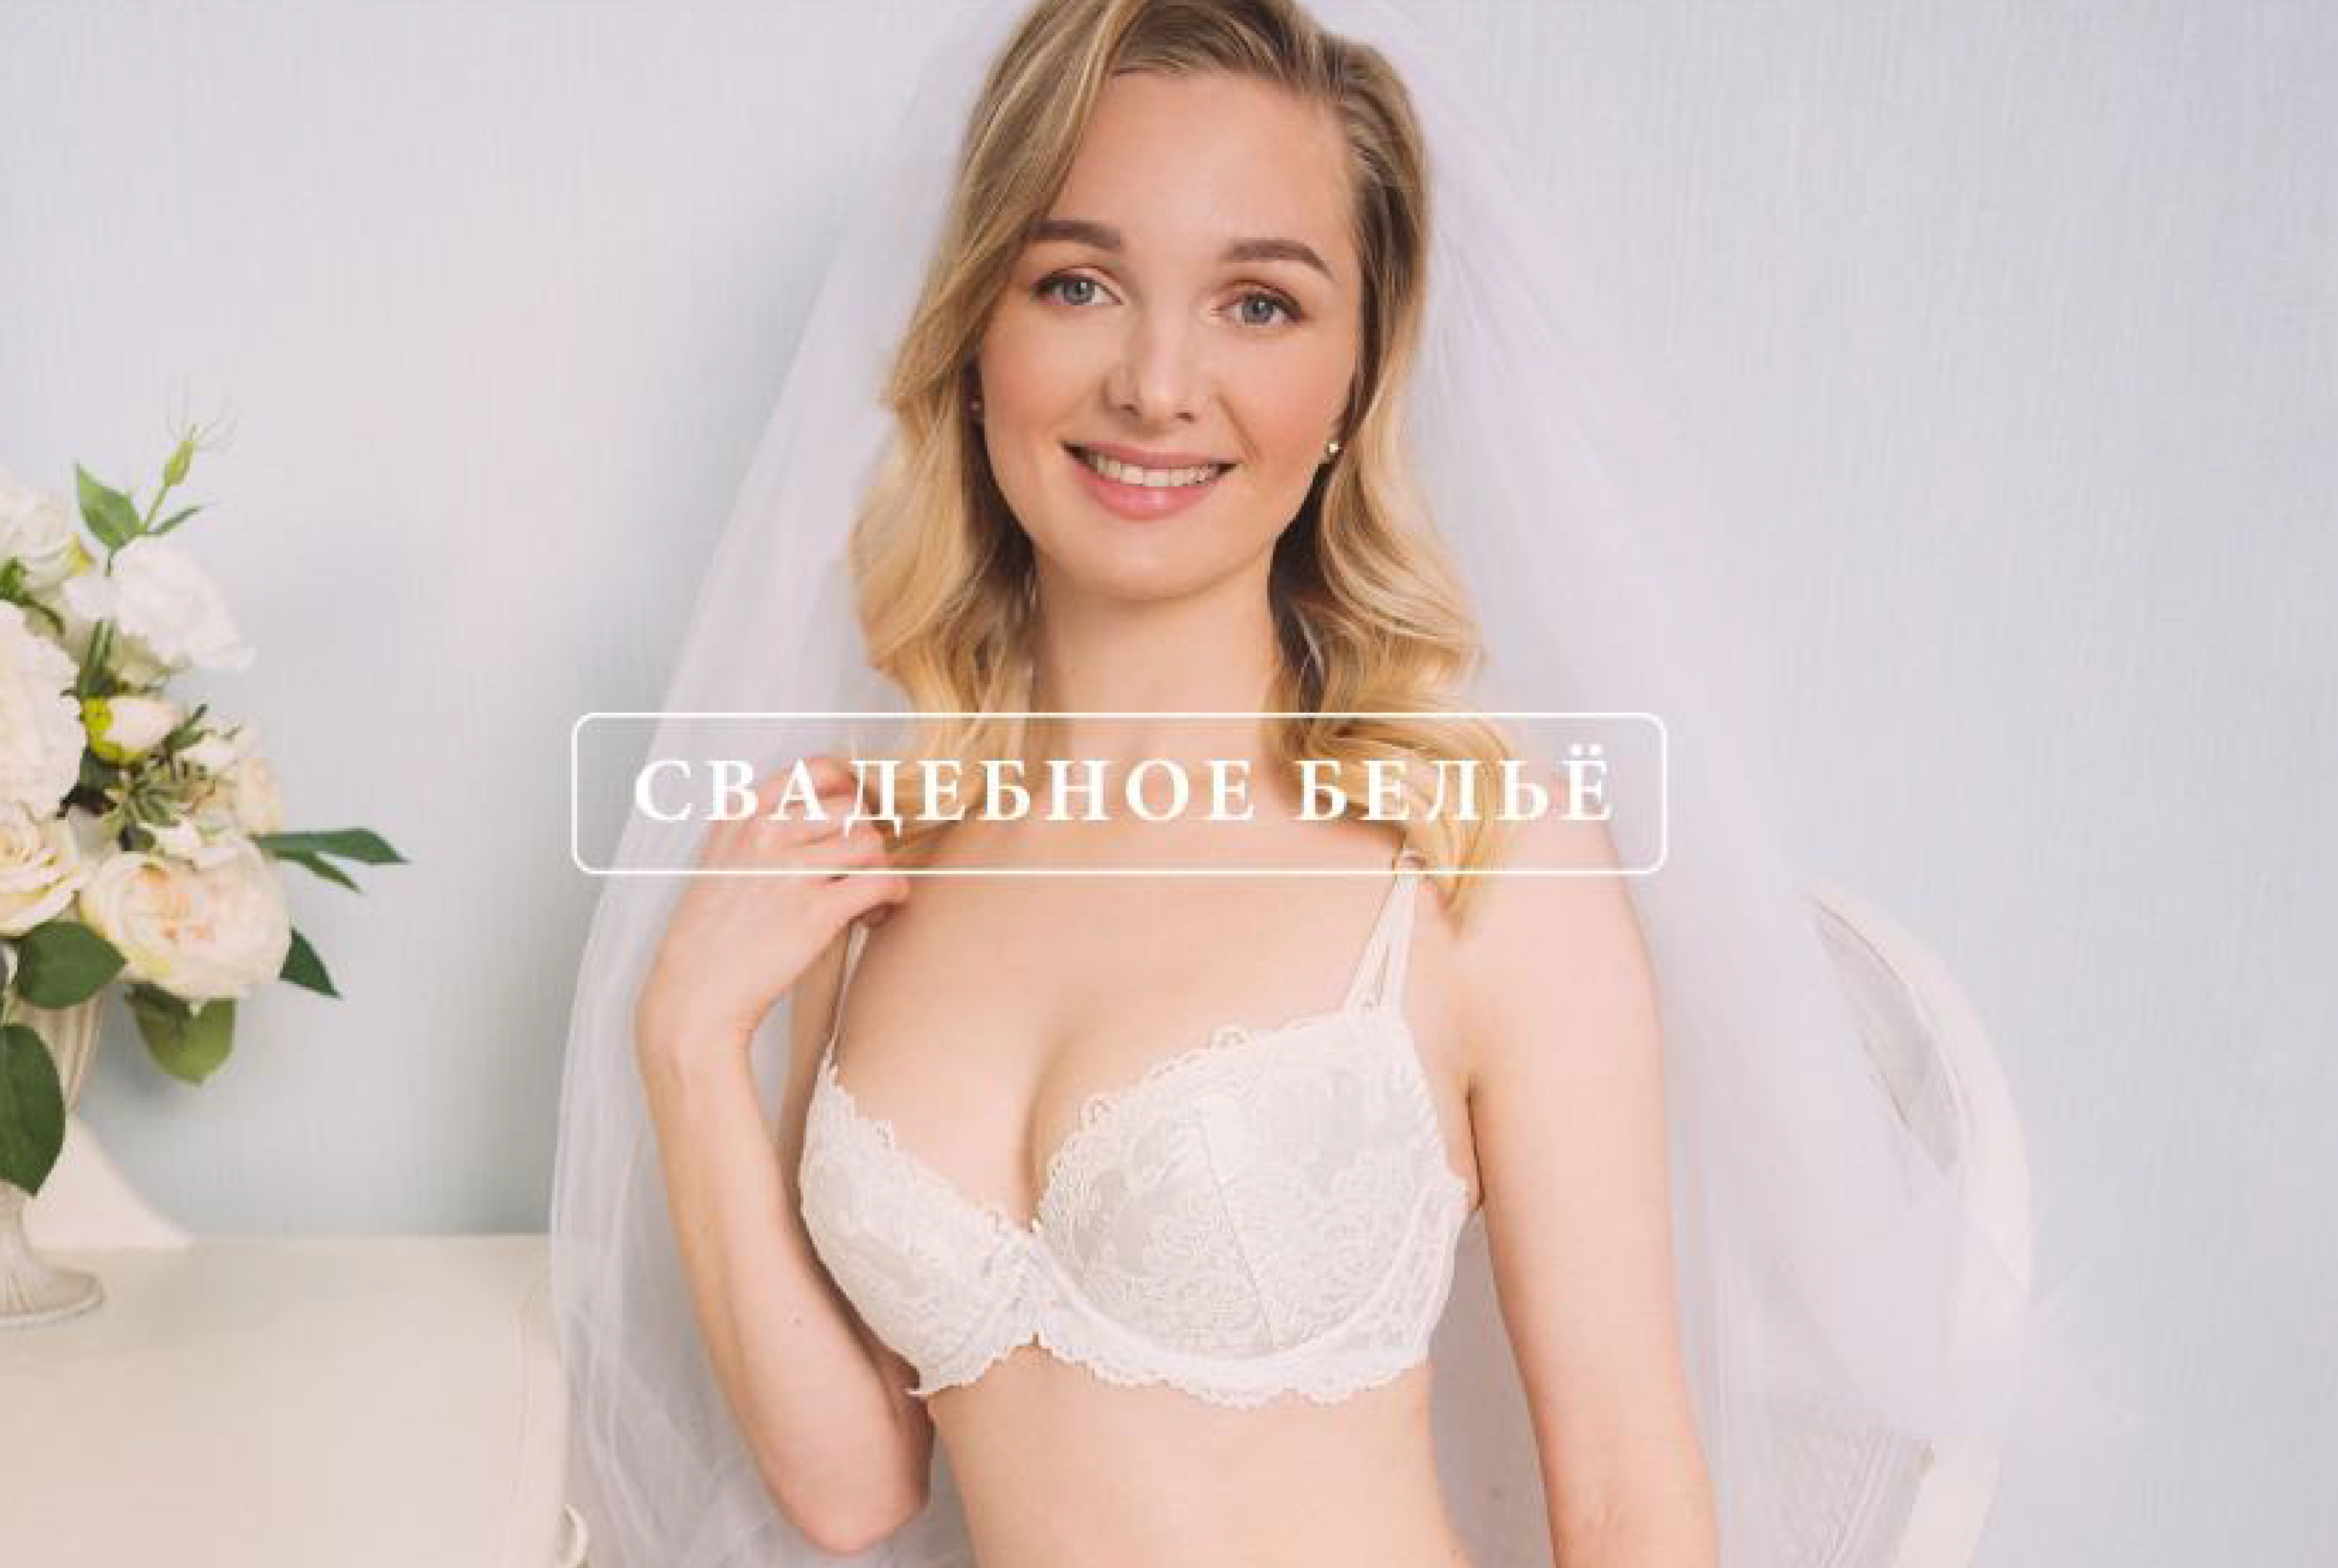 Купить женское белье оптом в Москве, СПБ. Интернет магазин женского белья оптом от производителя